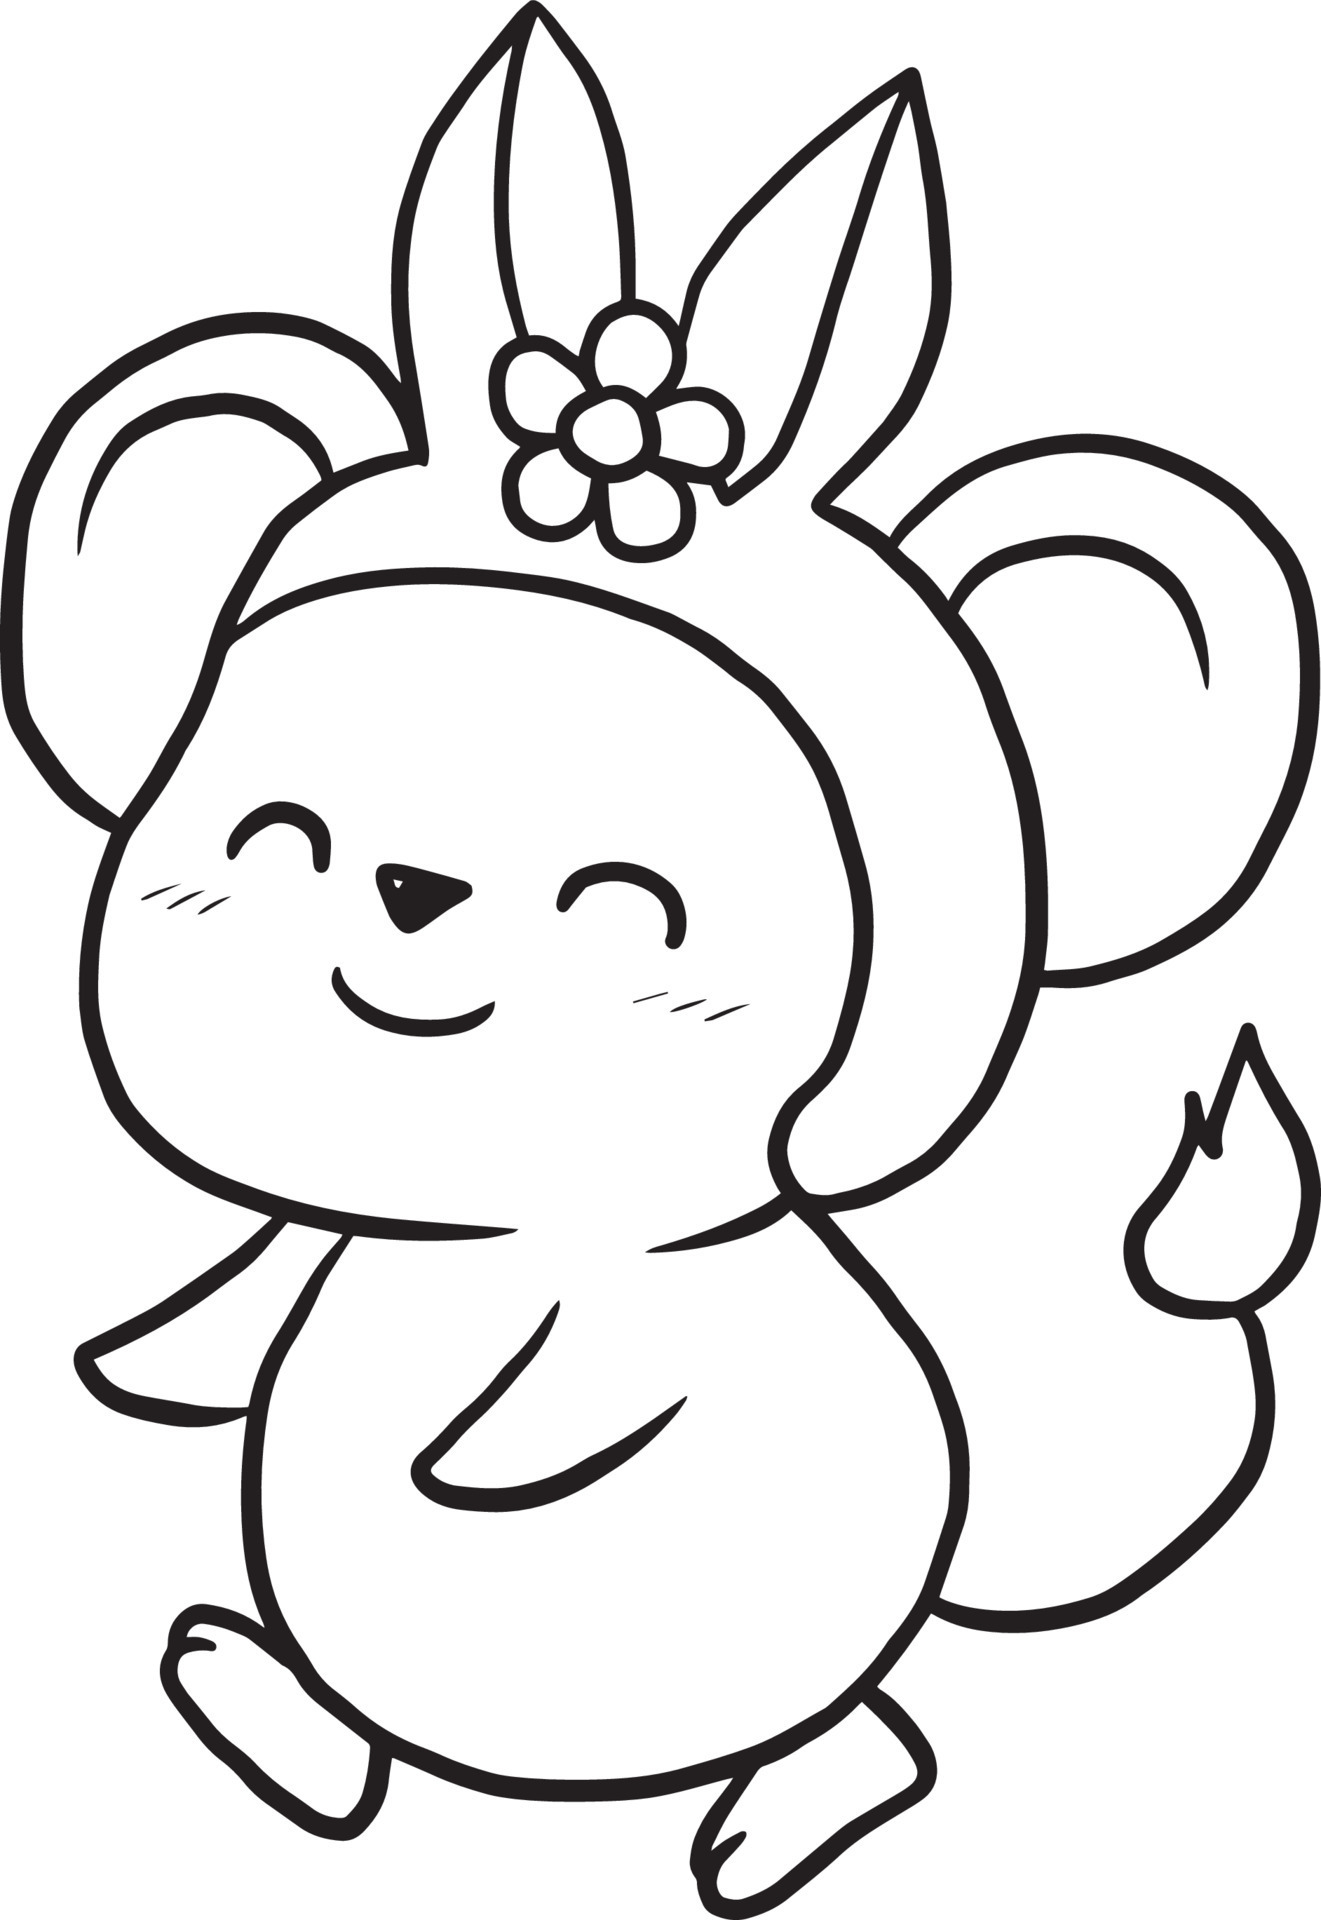 rat cartoon doodle kawaii anime cute coloring page 10504765 Vector Art ...